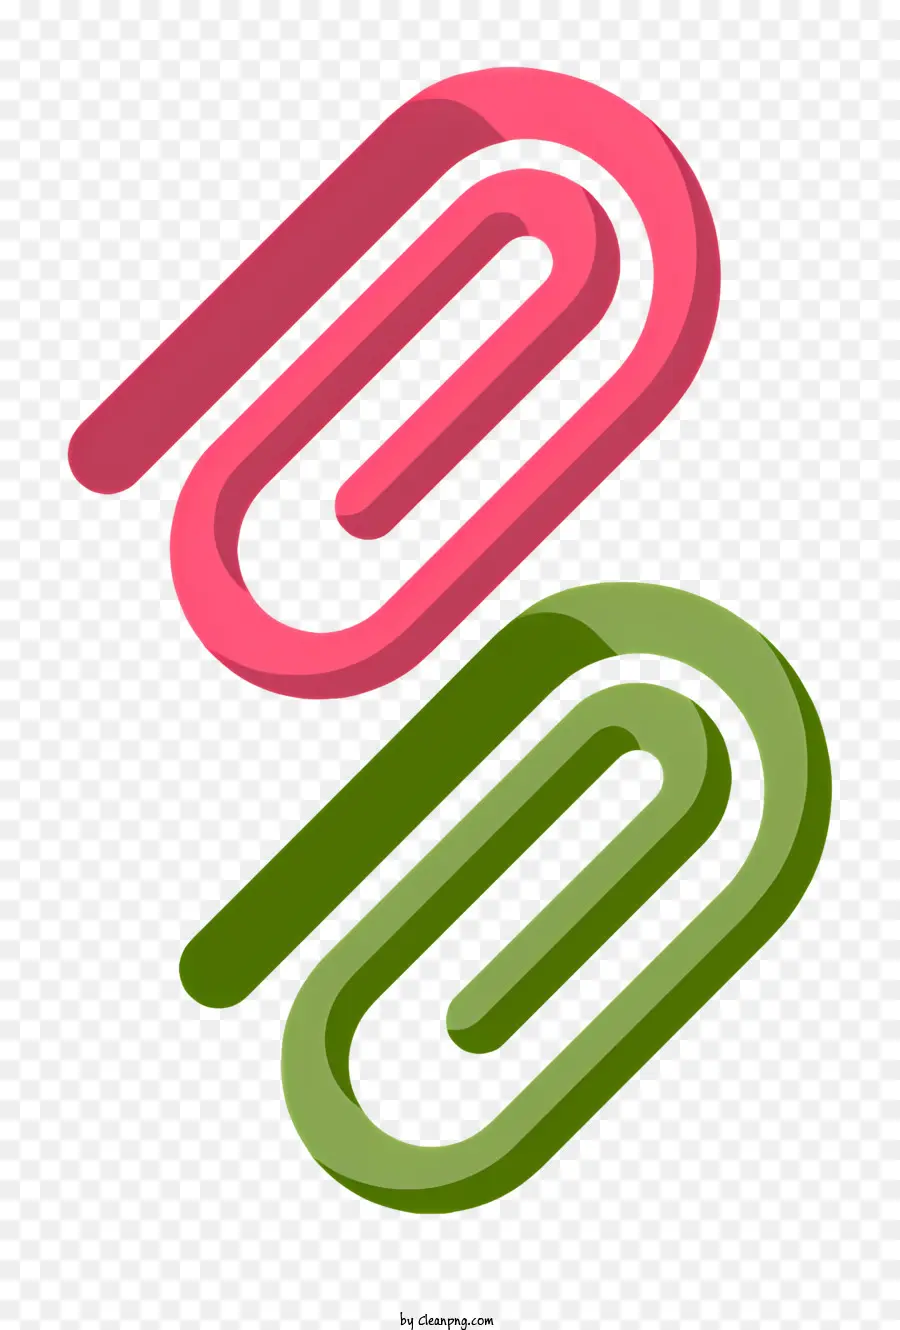 papierklammernder grünes griff rososen griff clip schwarzer Hintergrund - Papierclip mit grünem und rosa Griff am Schwarz